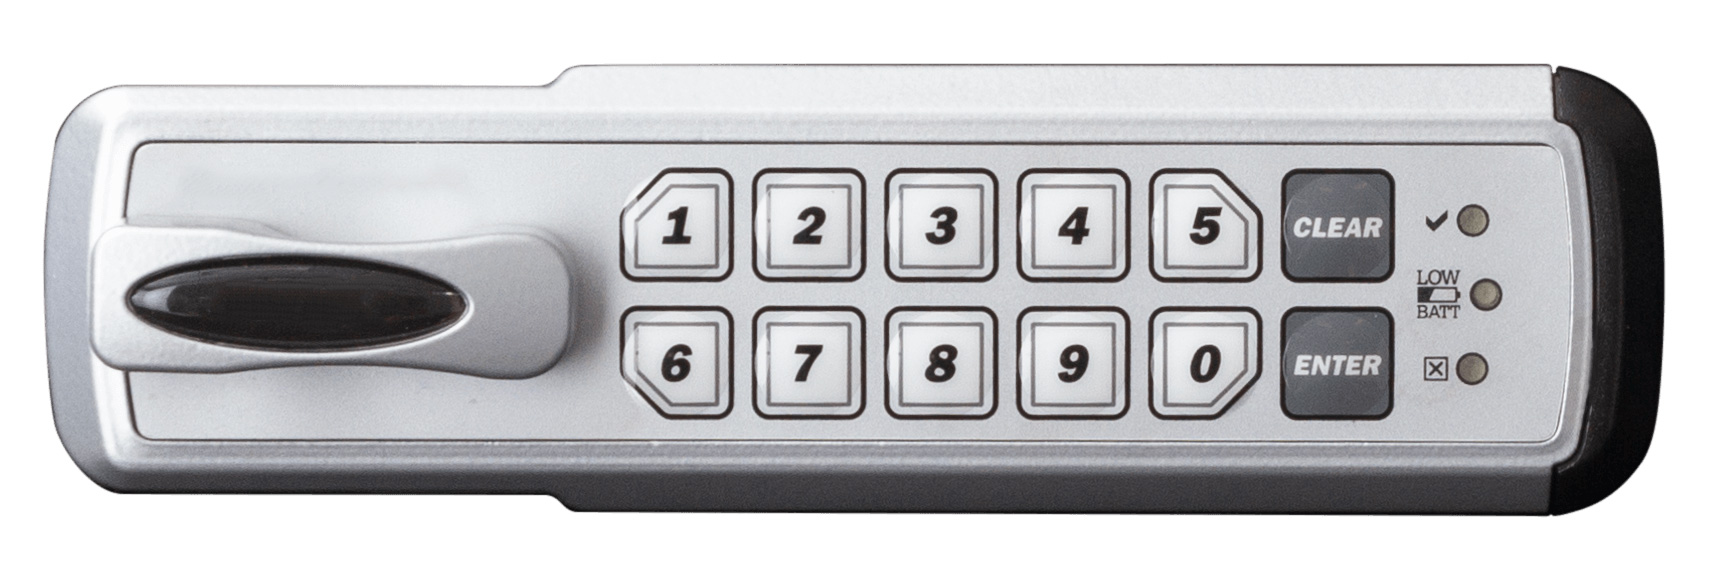 3 Combination Security Fridge Refrigerator Door Lock Freezer Lock